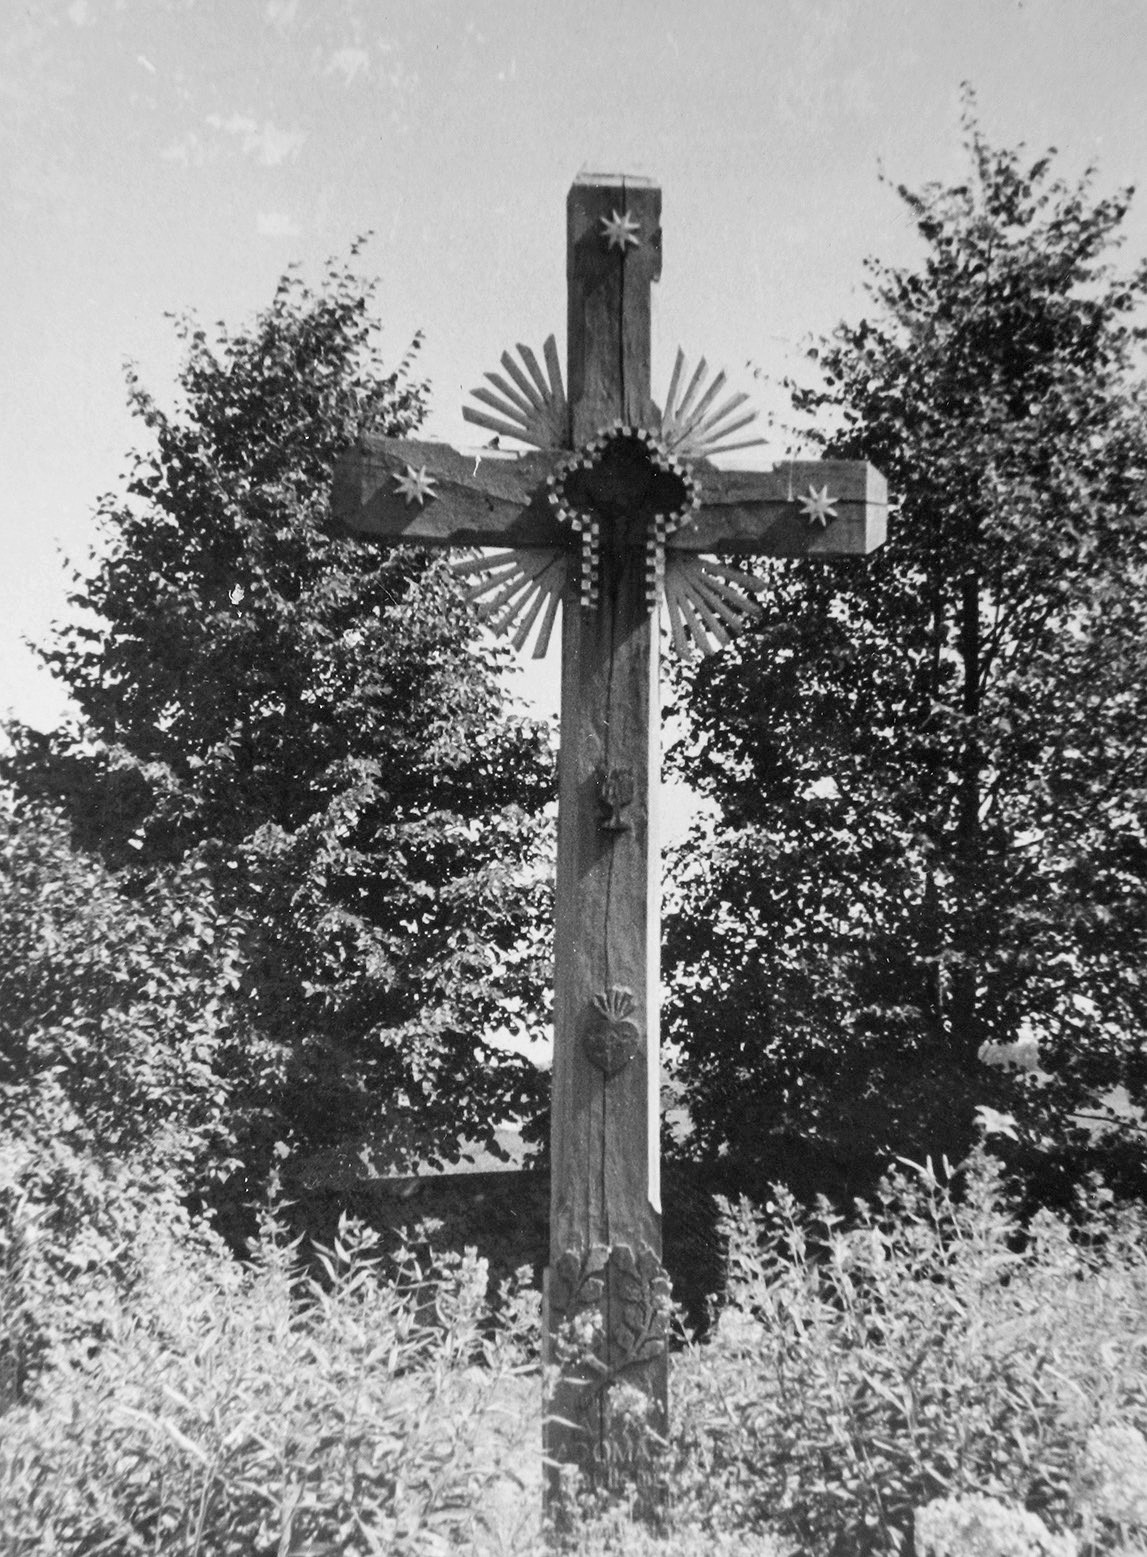 14 pav. Kryžius, 1948. Upytė, Panevėžio r. V. Miliaus nuotr., 1955. LII BR, f. 73, ng. 2060